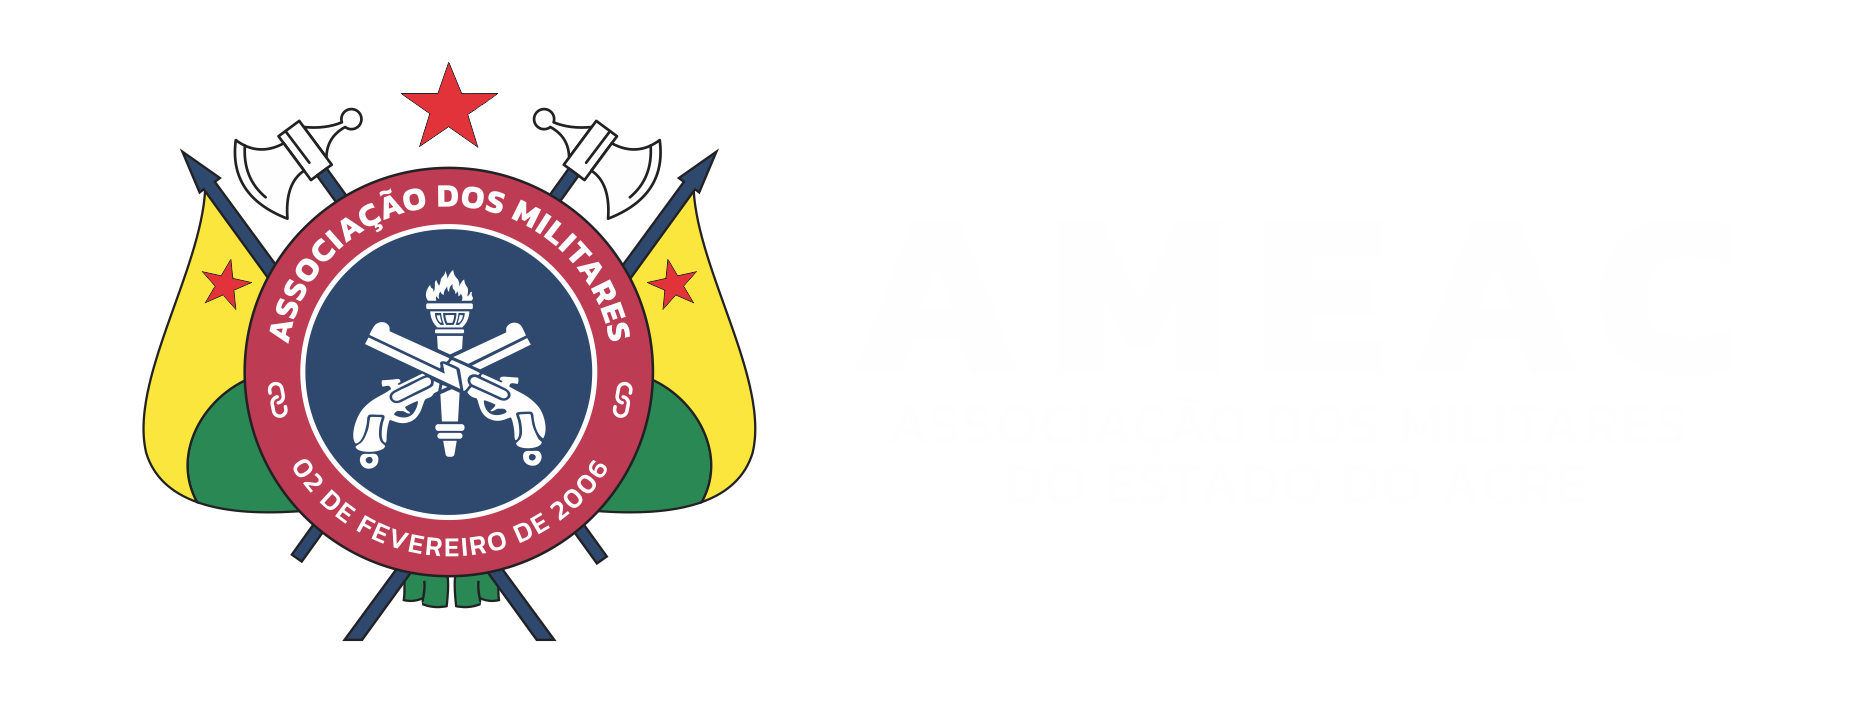 CLUBE DE TIRO E CAÇA DO ACRE – Ameac